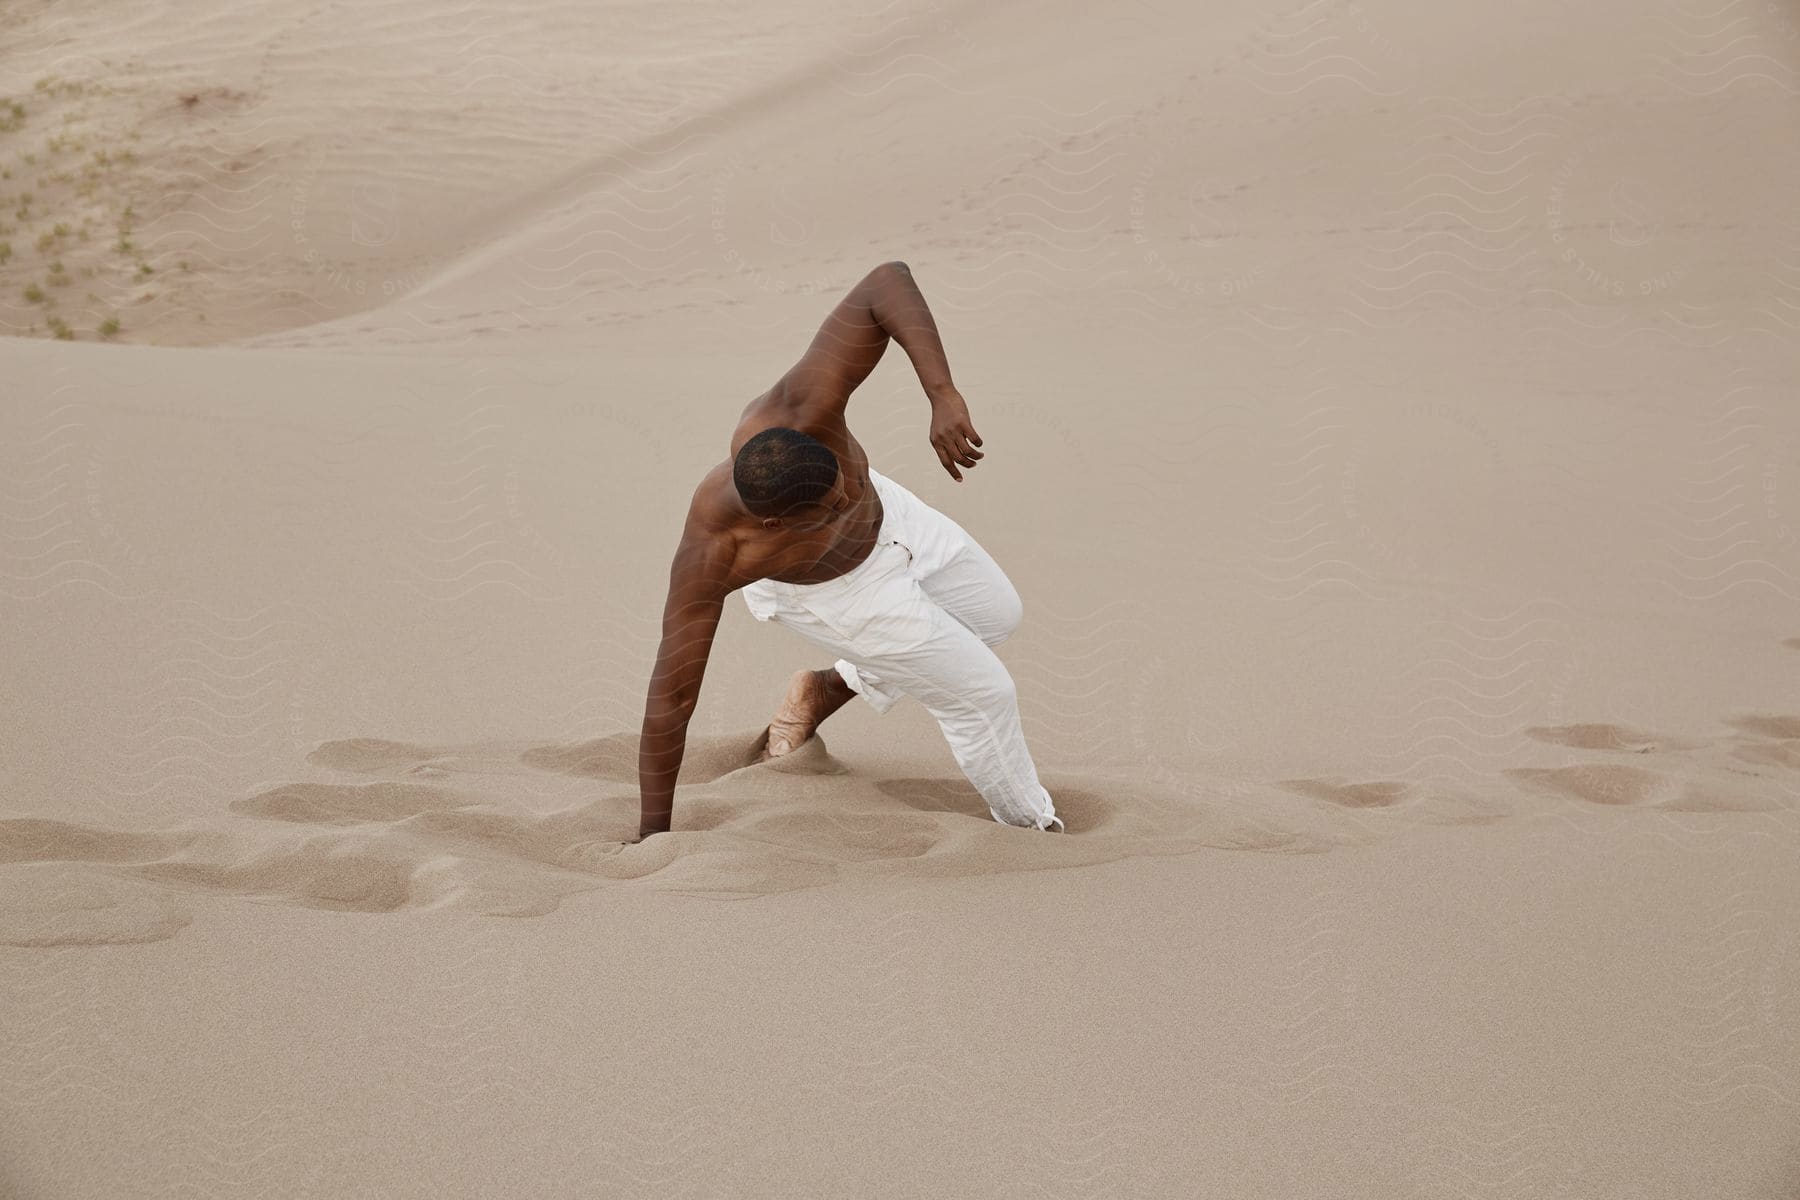 Determined man in white jeans walking through desert sand dunes